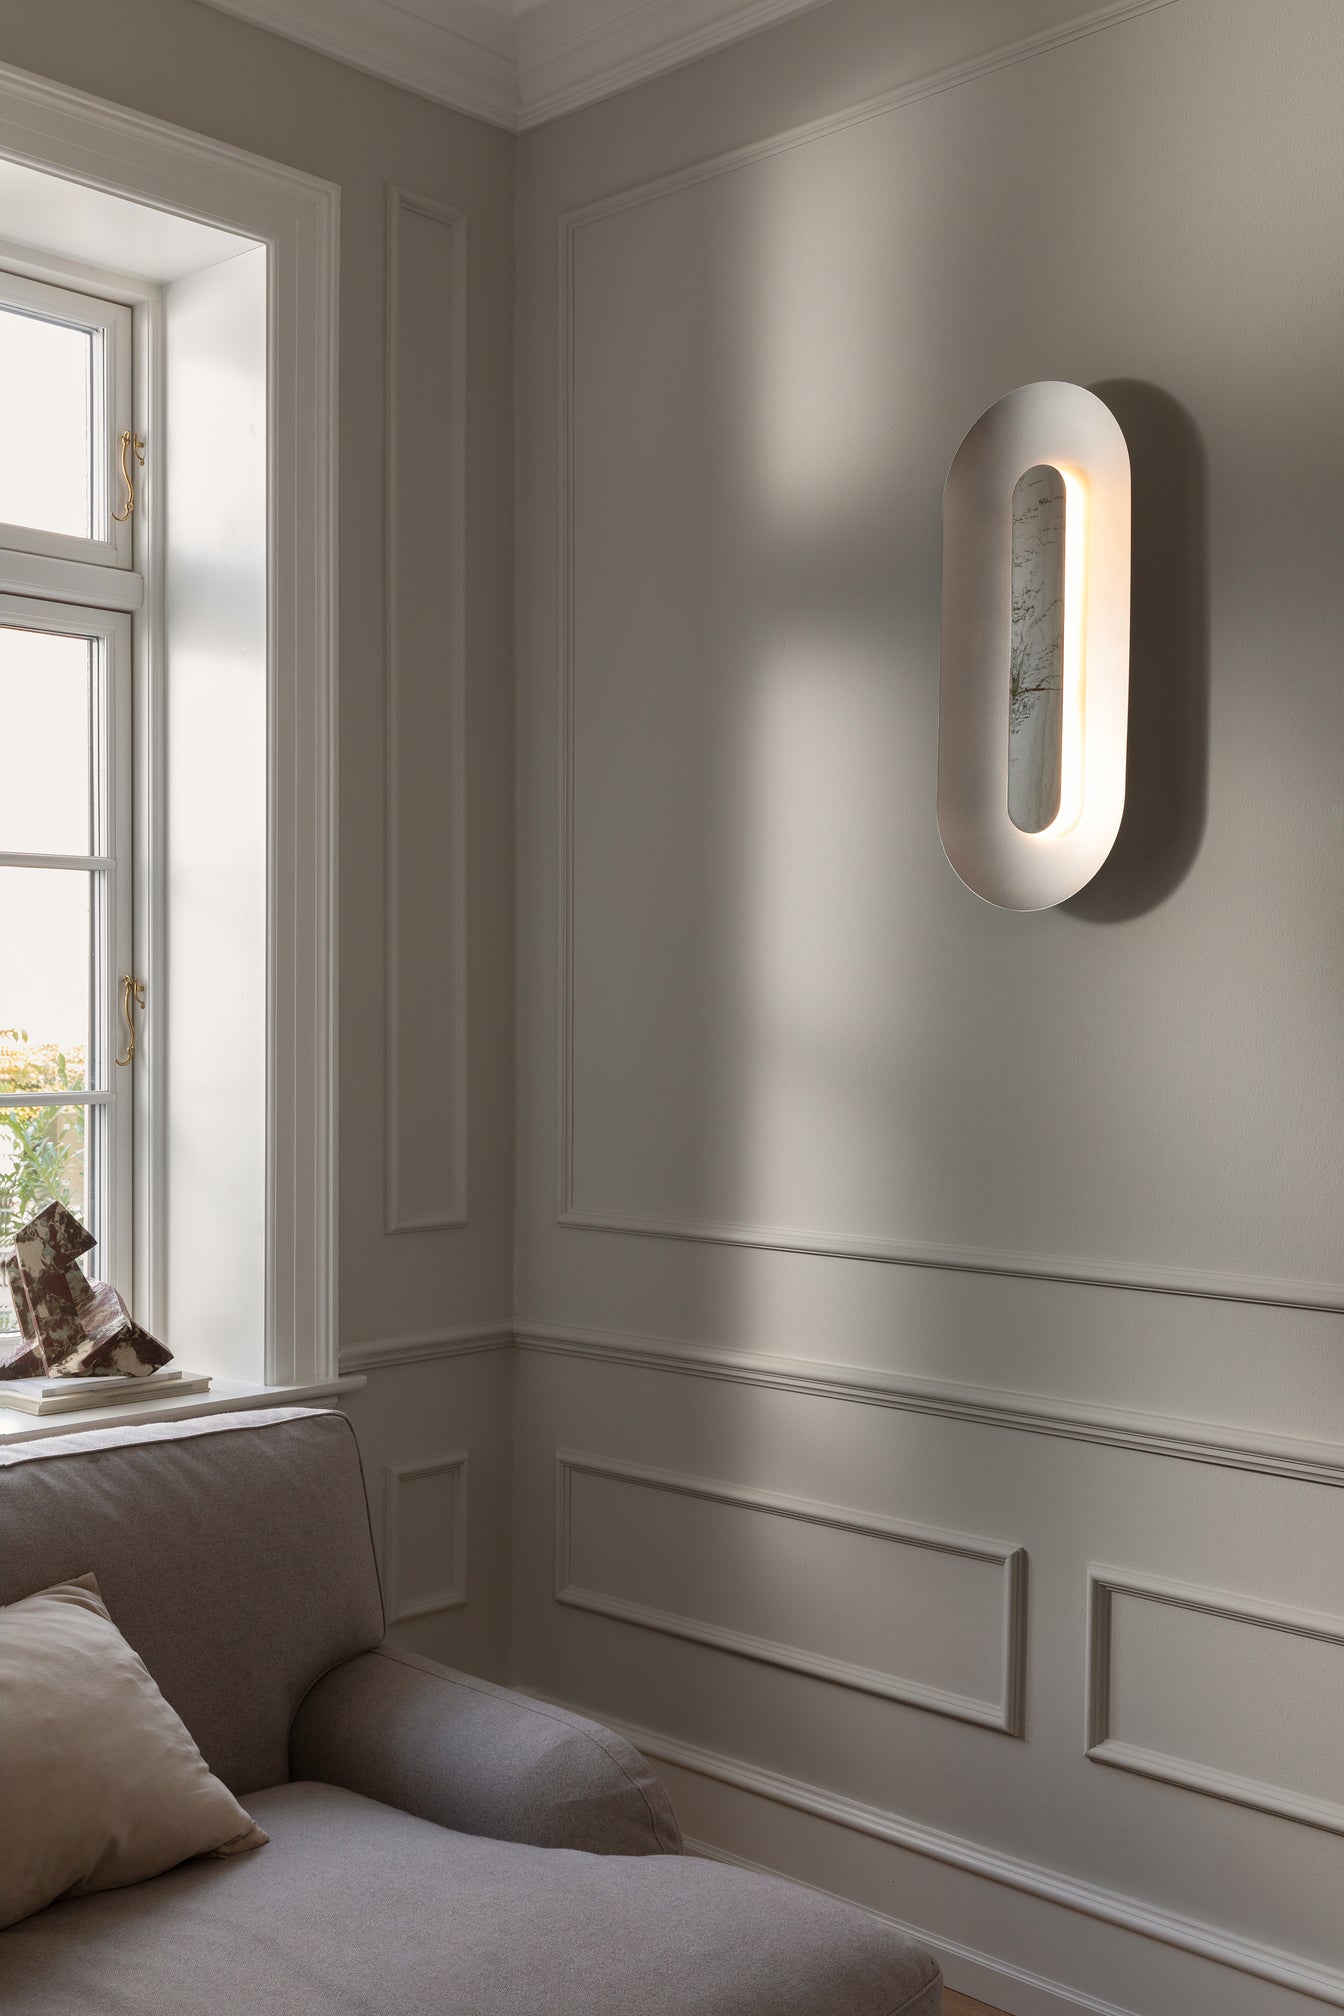 Oval sølvfarvet væglampe med indirekte lys, i dagligstuemiljø